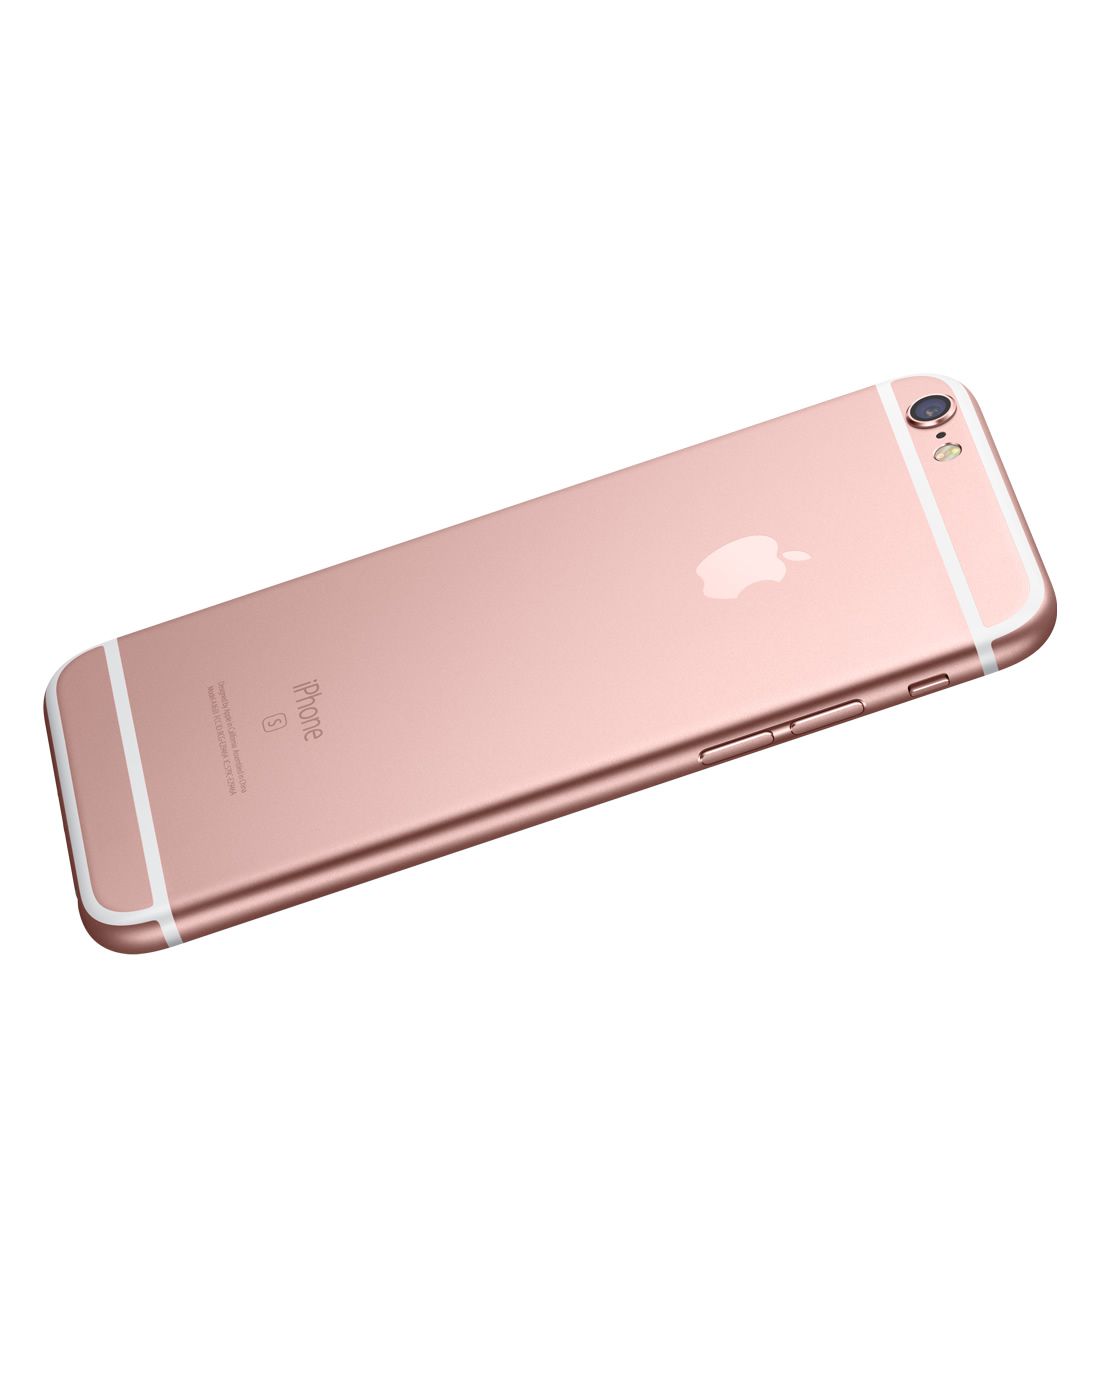 【超值套餐】iphone6s 32g玫瑰金